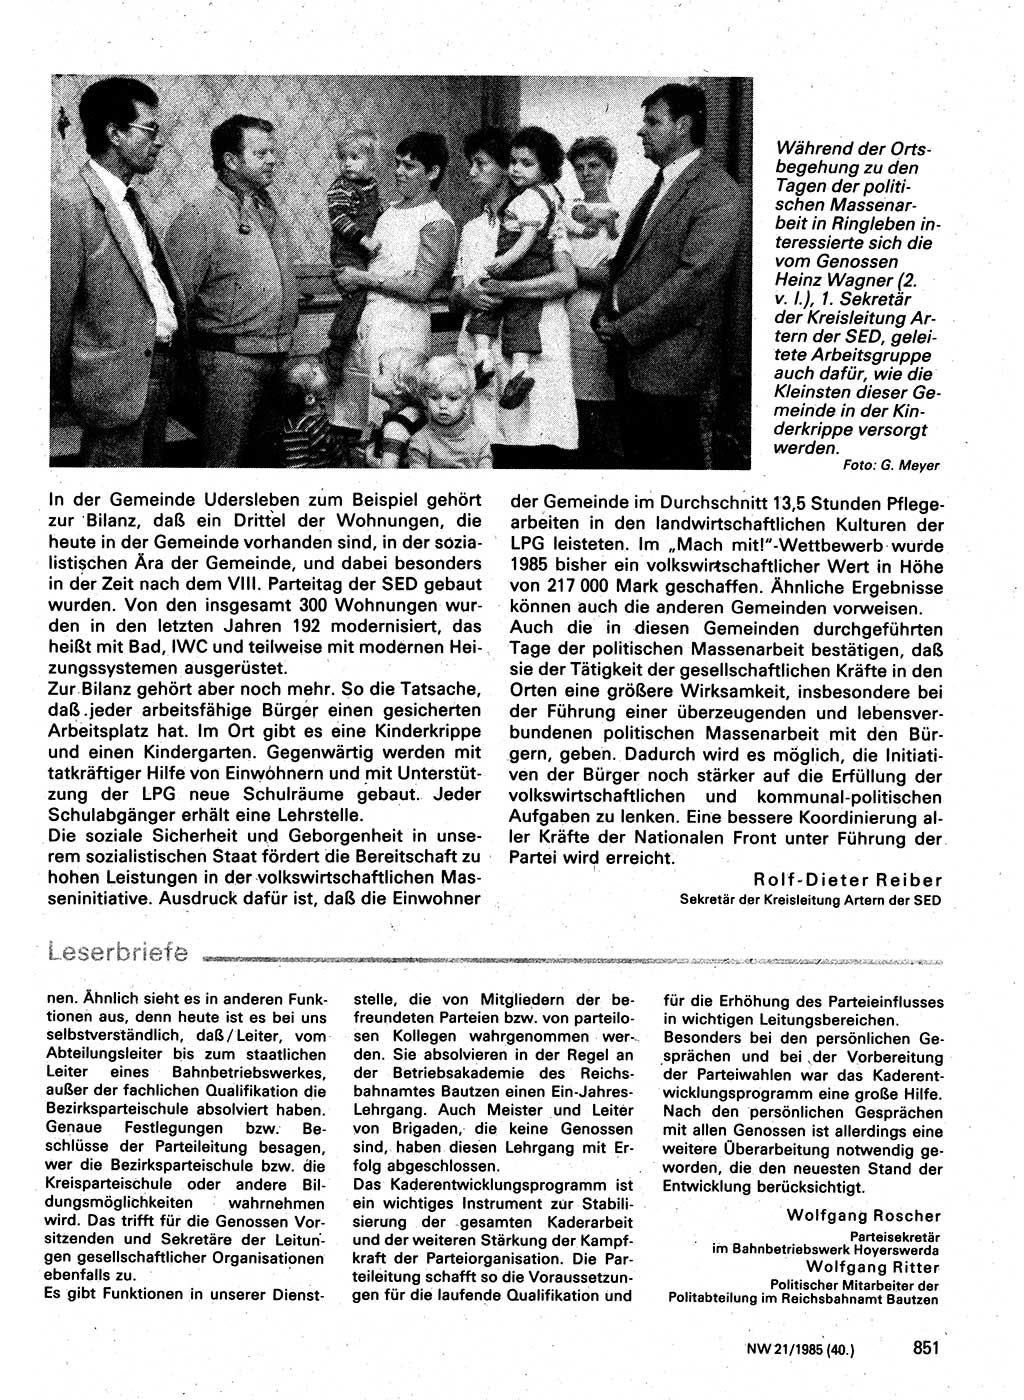 Neuer Weg (NW), Organ des Zentralkomitees (ZK) der SED (Sozialistische Einheitspartei Deutschlands) für Fragen des Parteilebens, 40. Jahrgang [Deutsche Demokratische Republik (DDR)] 1985, Seite 851 (NW ZK SED DDR 1985, S. 851)